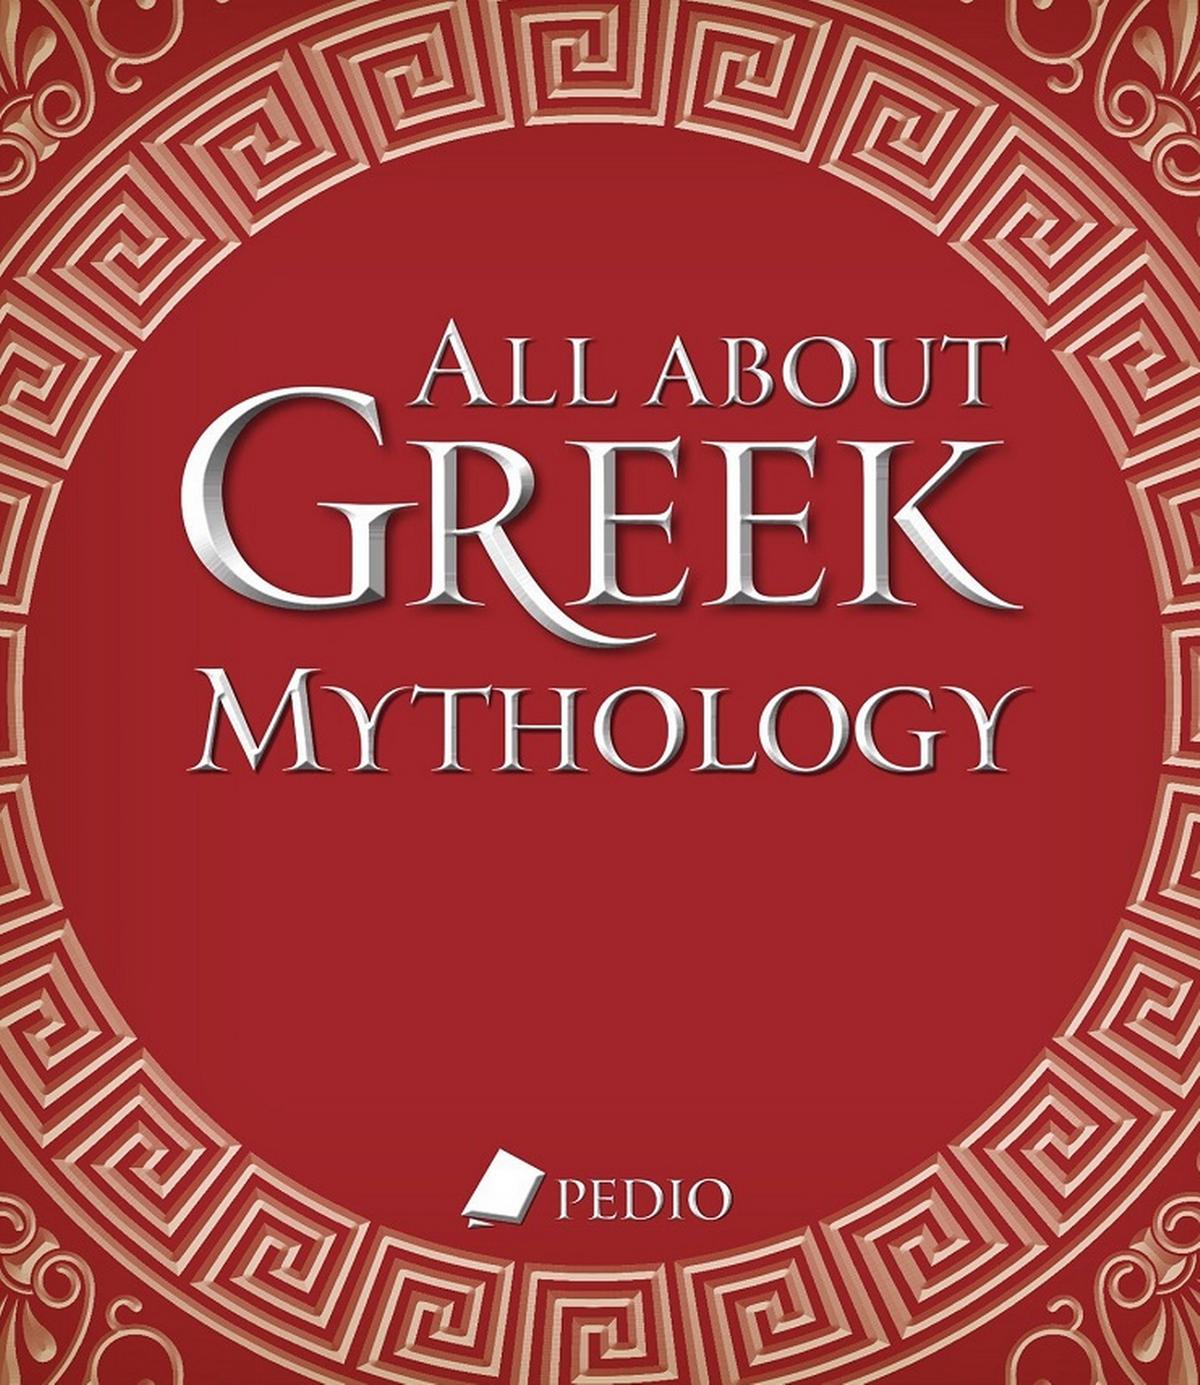 All about Greek mythology